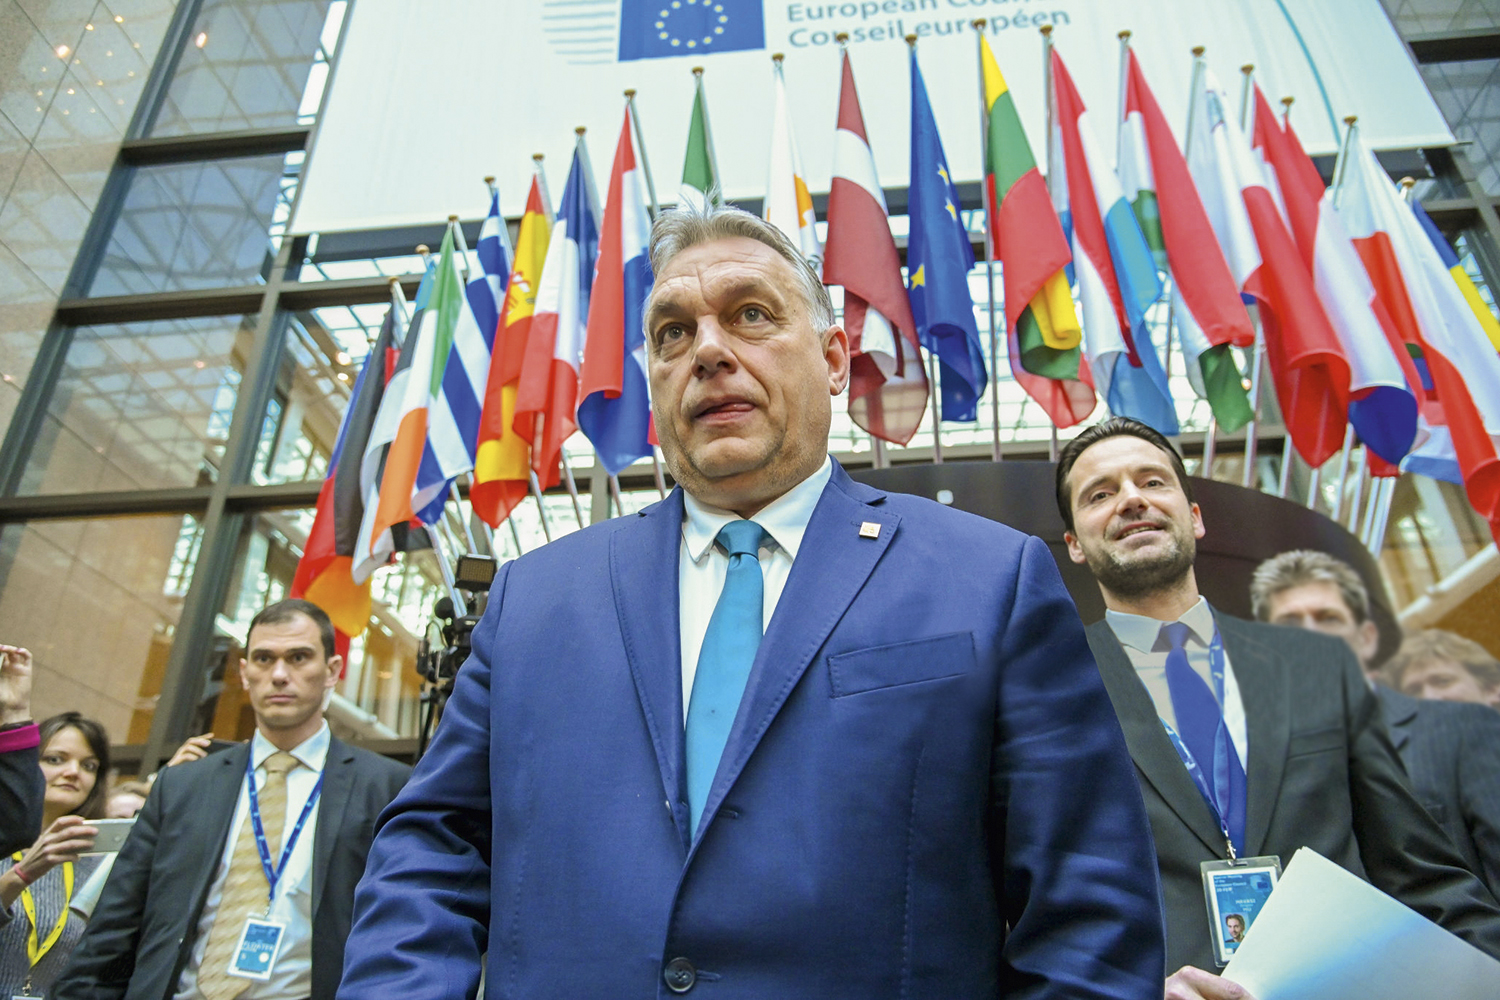 DIREITA - Orbán: em sua cruzada antidemocrática, além de ampliar o número de juízes, ele aposentou alguns -